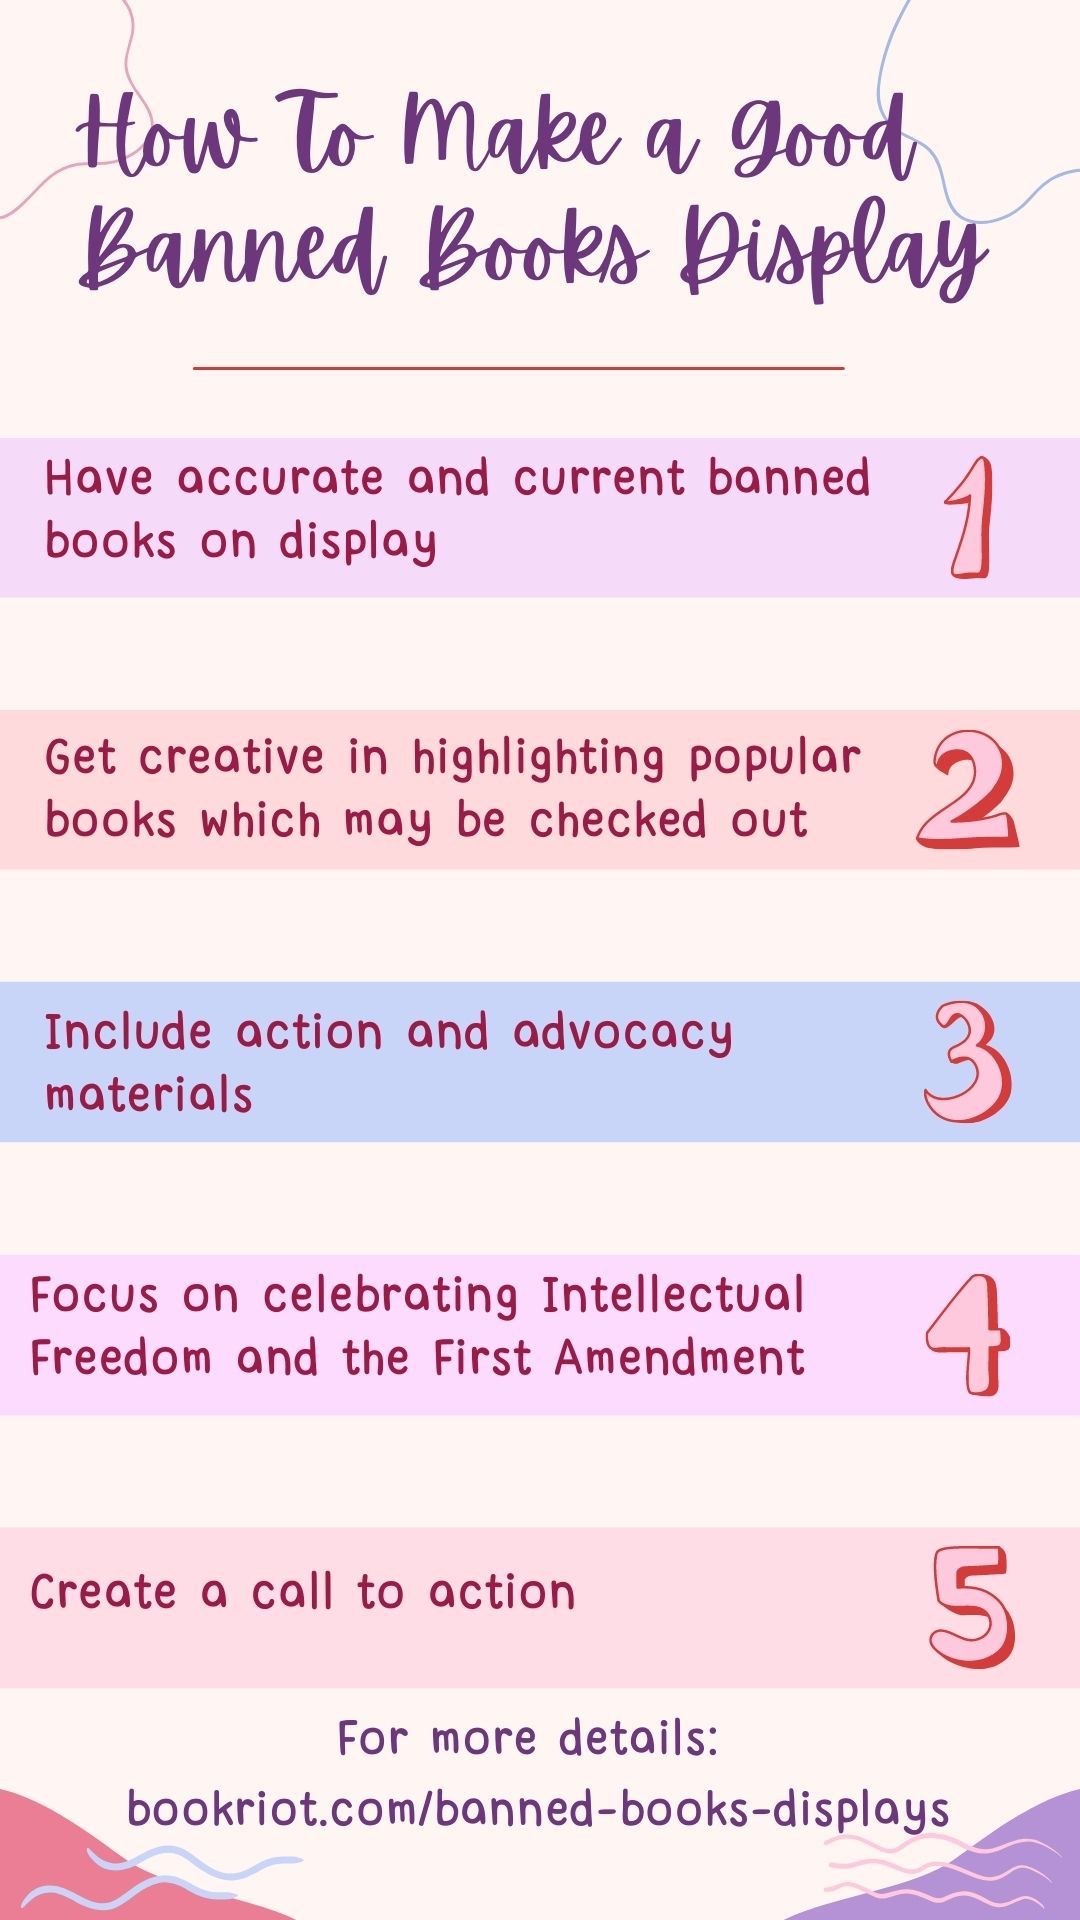 图形与5个关键步骤，使一个良好的禁书显示从文字上面。这张图用了粉红色、紫色和奶油色。